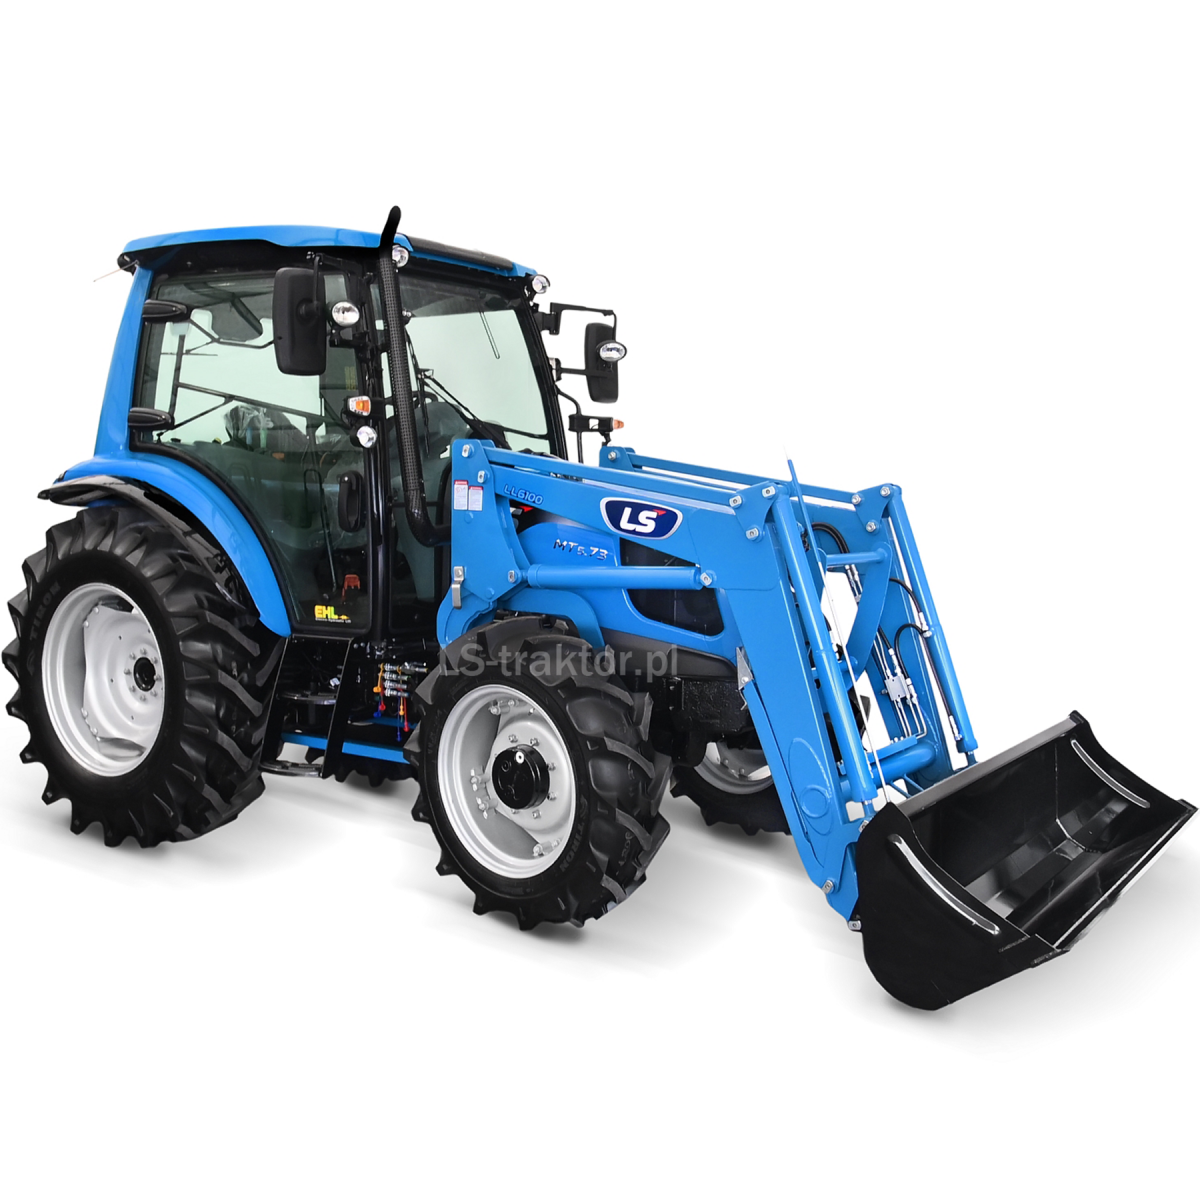 LS Traktor MT5.73 PST 4x4 - 73 PS / KABINE / EHL + LS LL6100 Frontlader